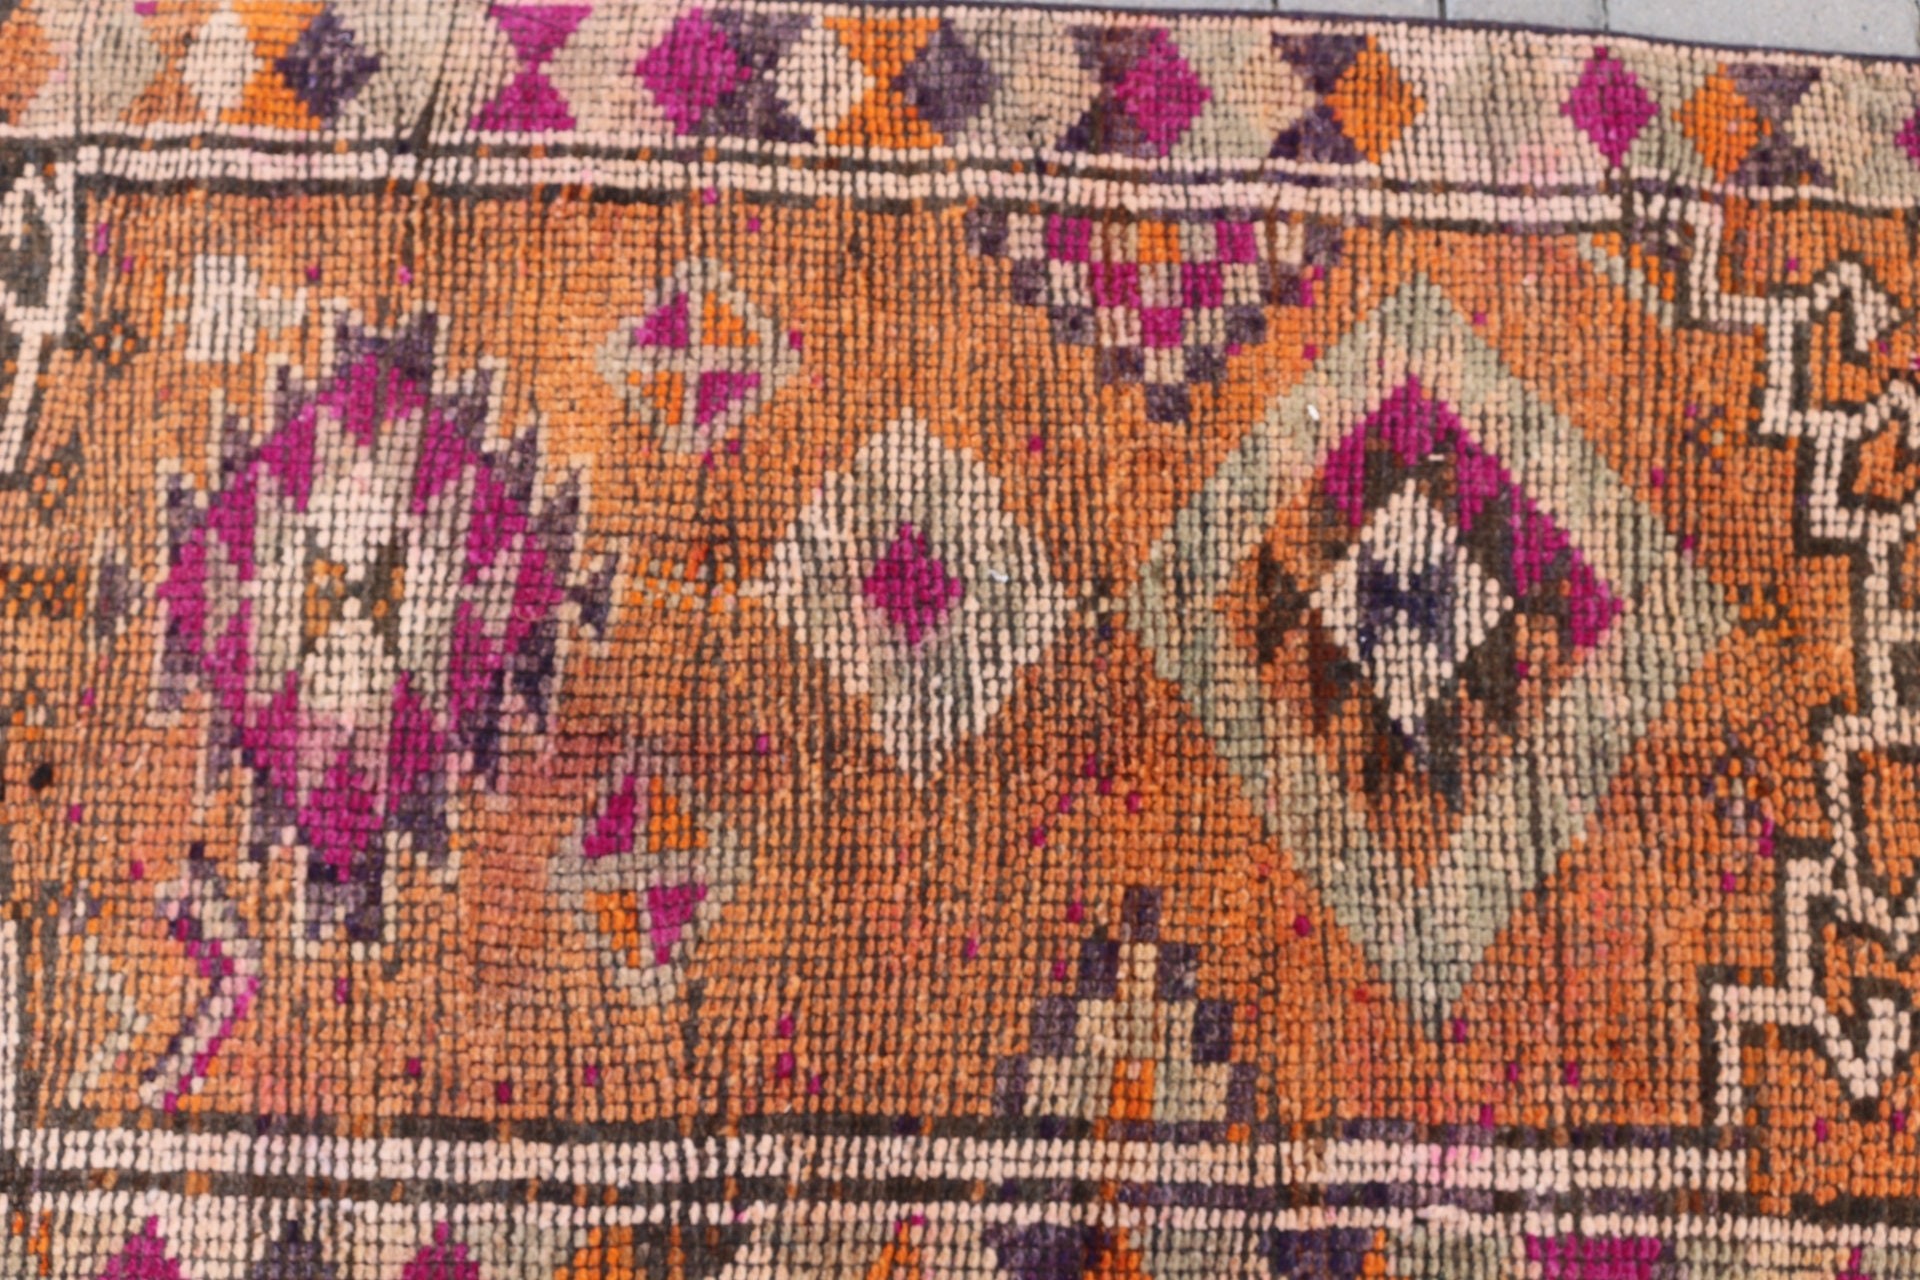 Orange Oriental Rug, Kitchen Rugs, Turkish Rug, 2.7x10.9 ft Runner Rugs, Stair Rug, Moroccan Rug, Vintage Rug, Ethnic Rug